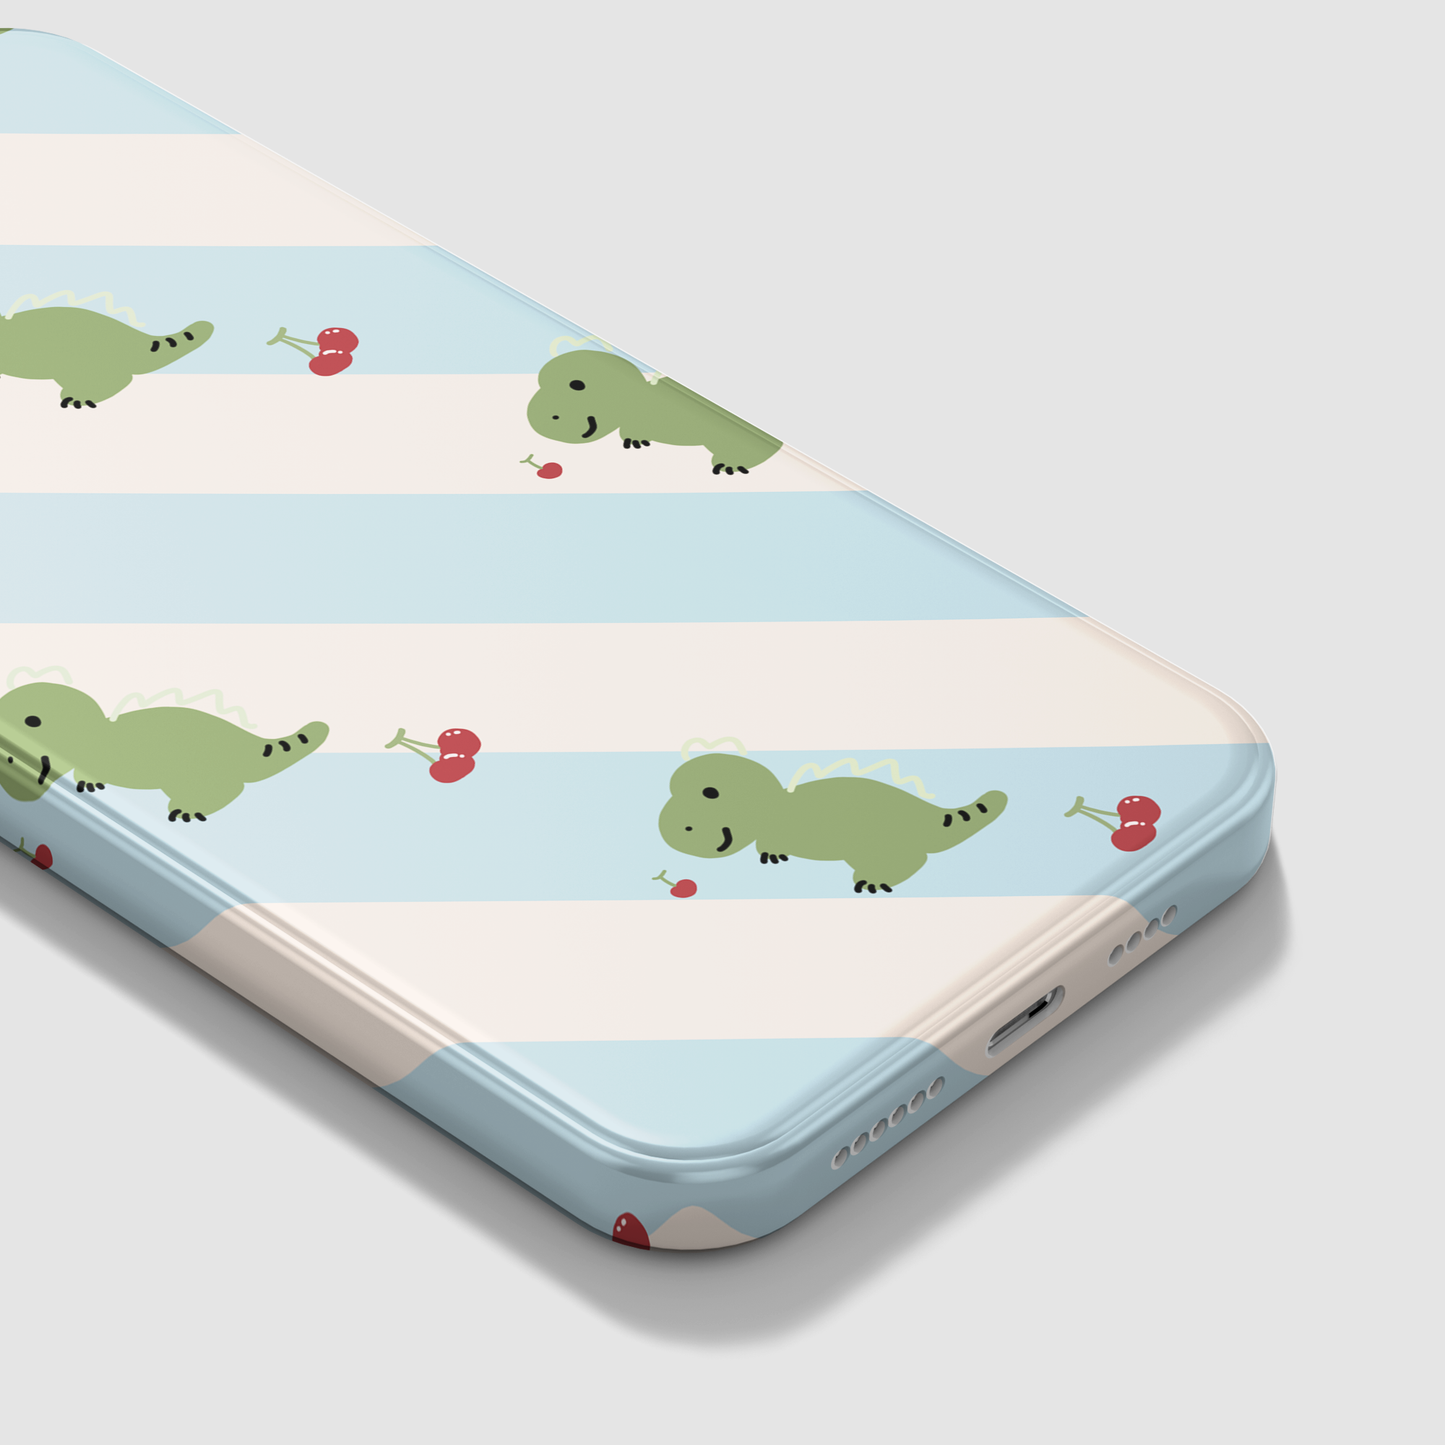 Happy Dinosaur - Slim Phone Case